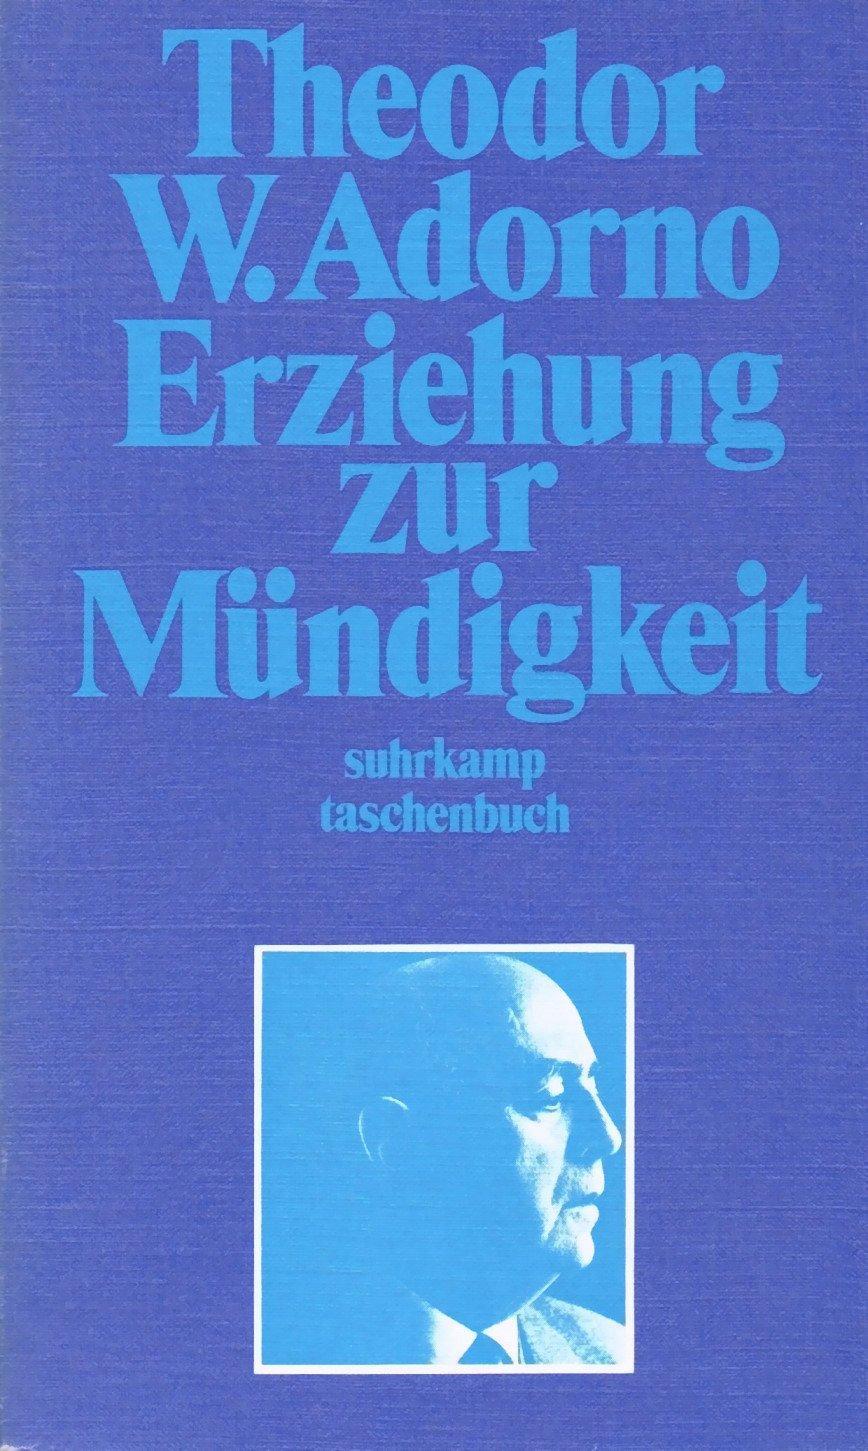 Theodor W. Adorno: Erziehung zur Mündigkeit (Paperback, German language, 1970, Suhrkamp Verlag)